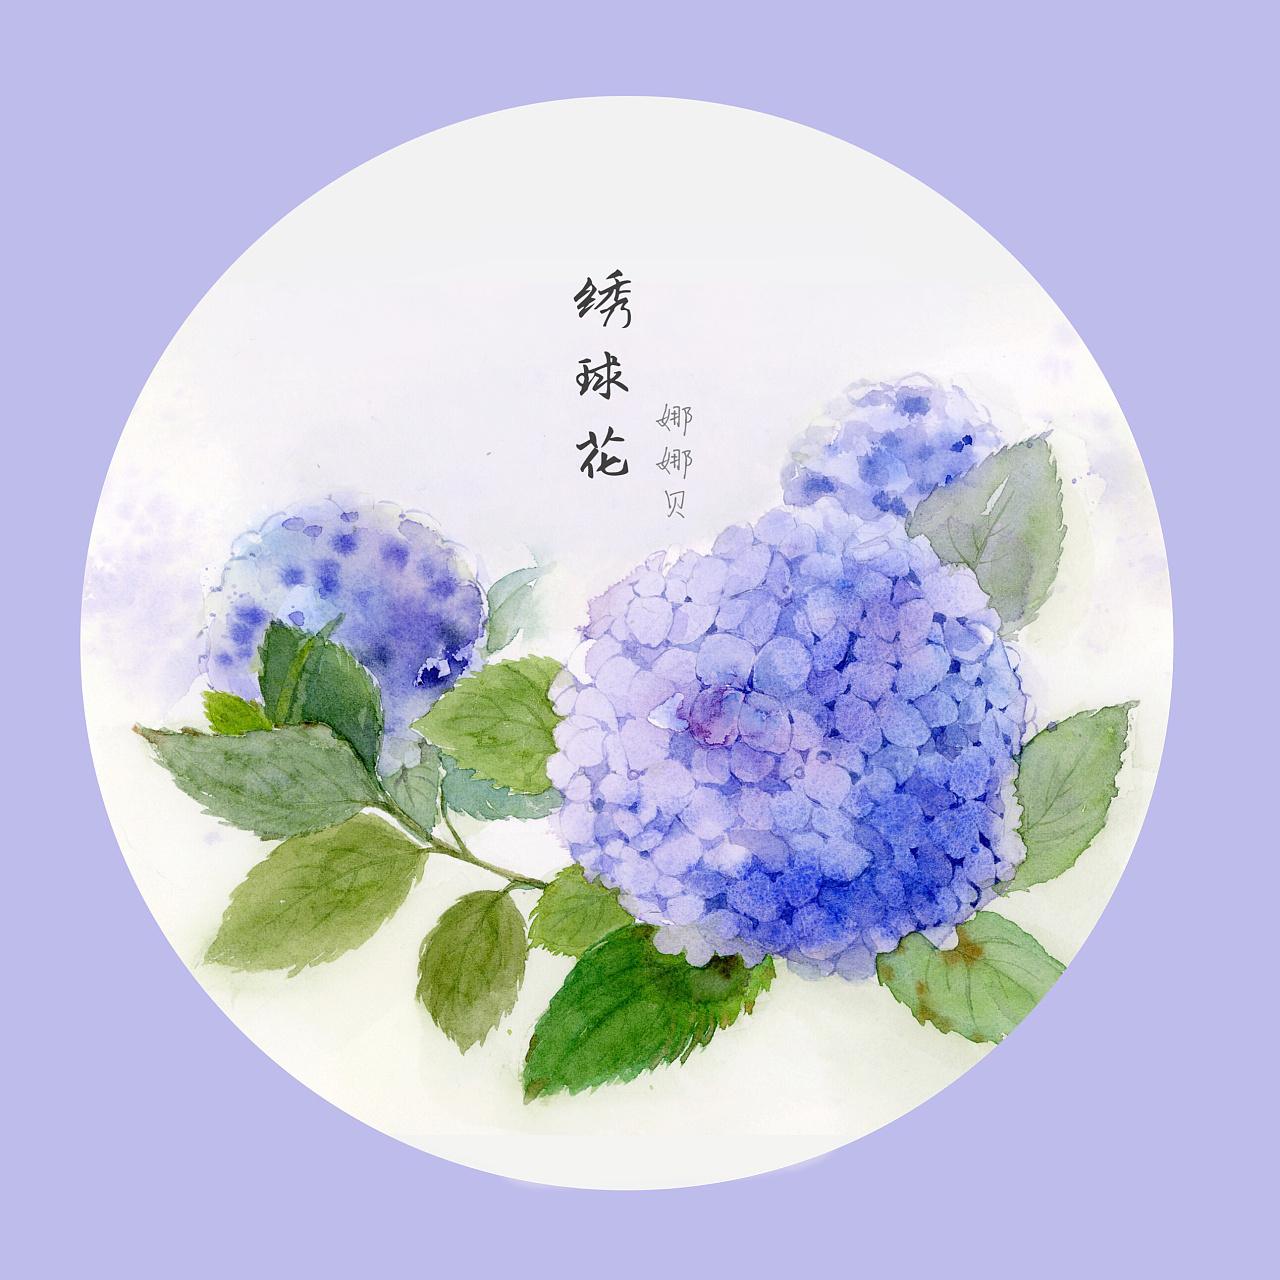 绣球花,也叫八仙花,紫阳花.